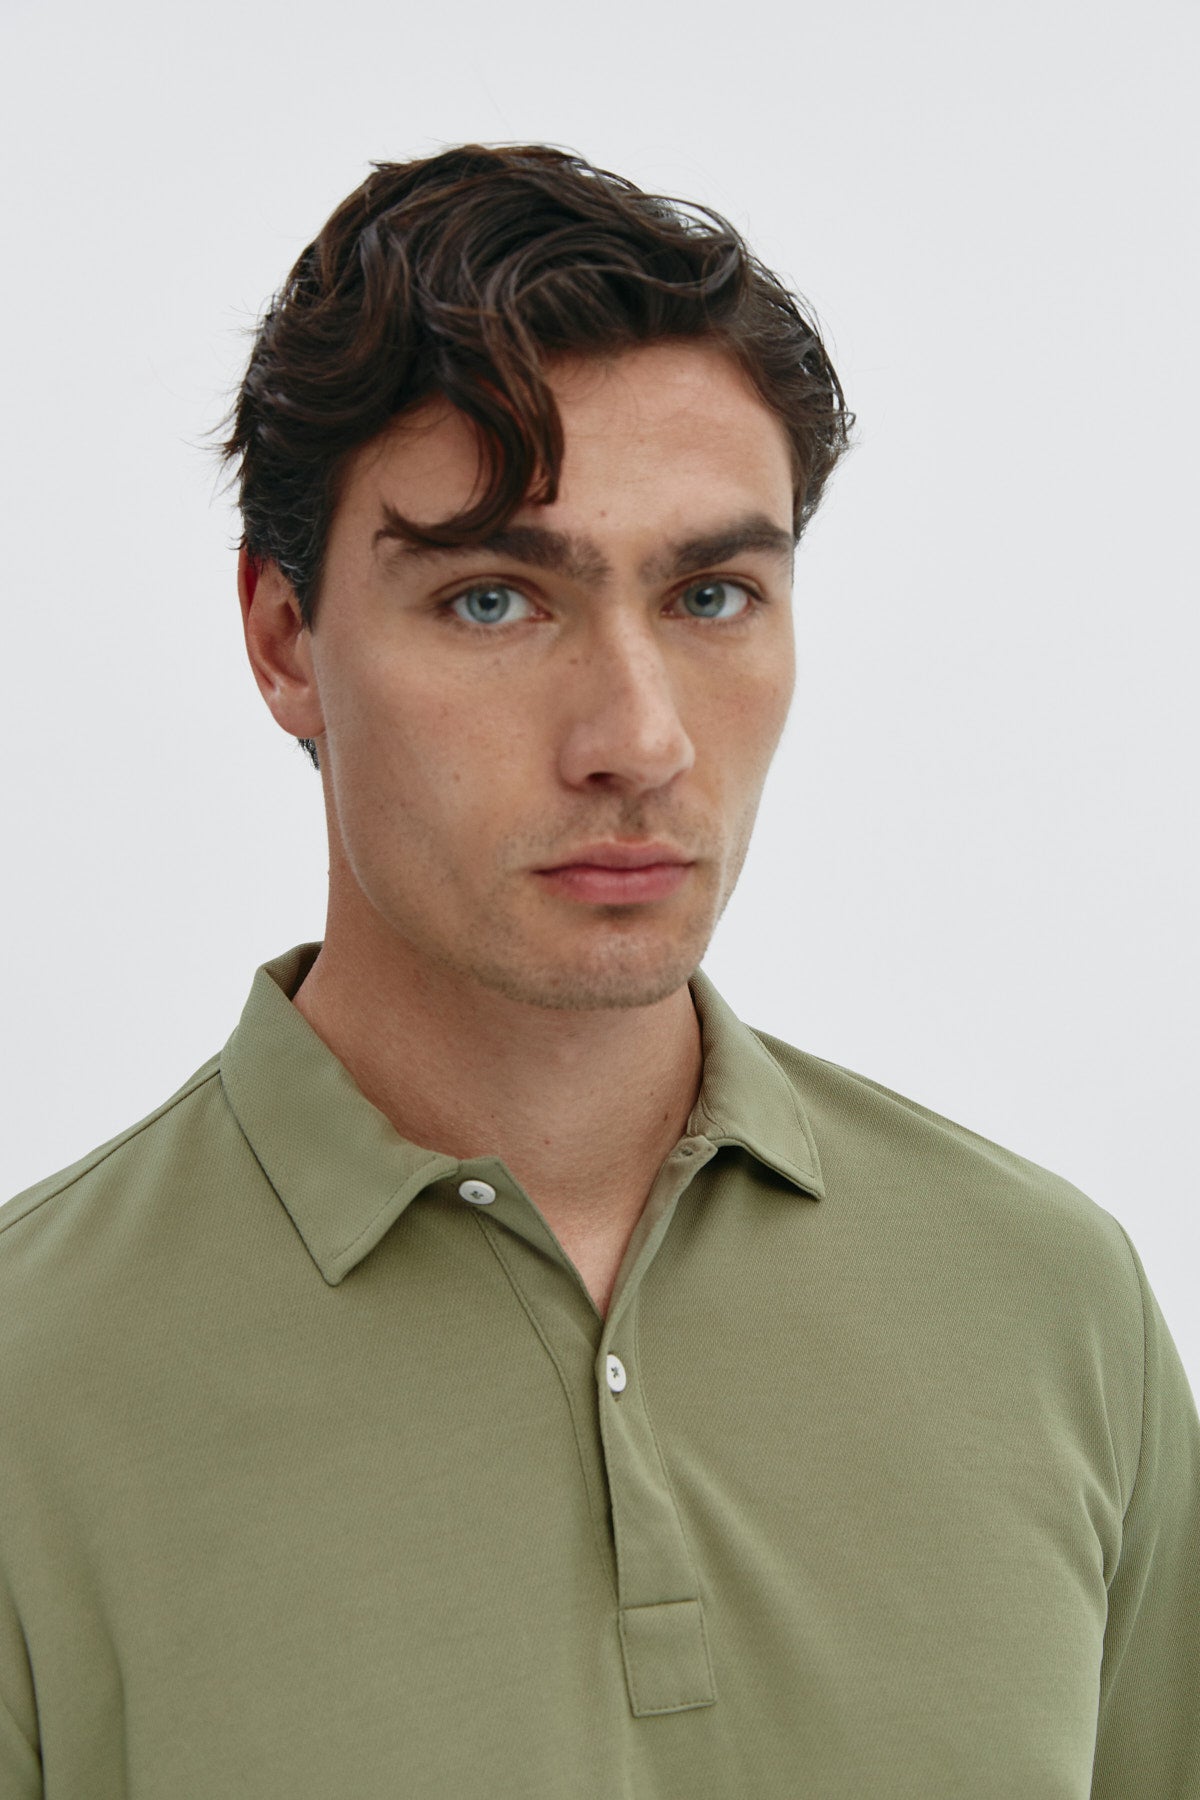 Polo de manga larga para hombre en color verde malaquita, sin arrugas, antimanchas, ligero y flexible para mayor comodidad. Foto retrato